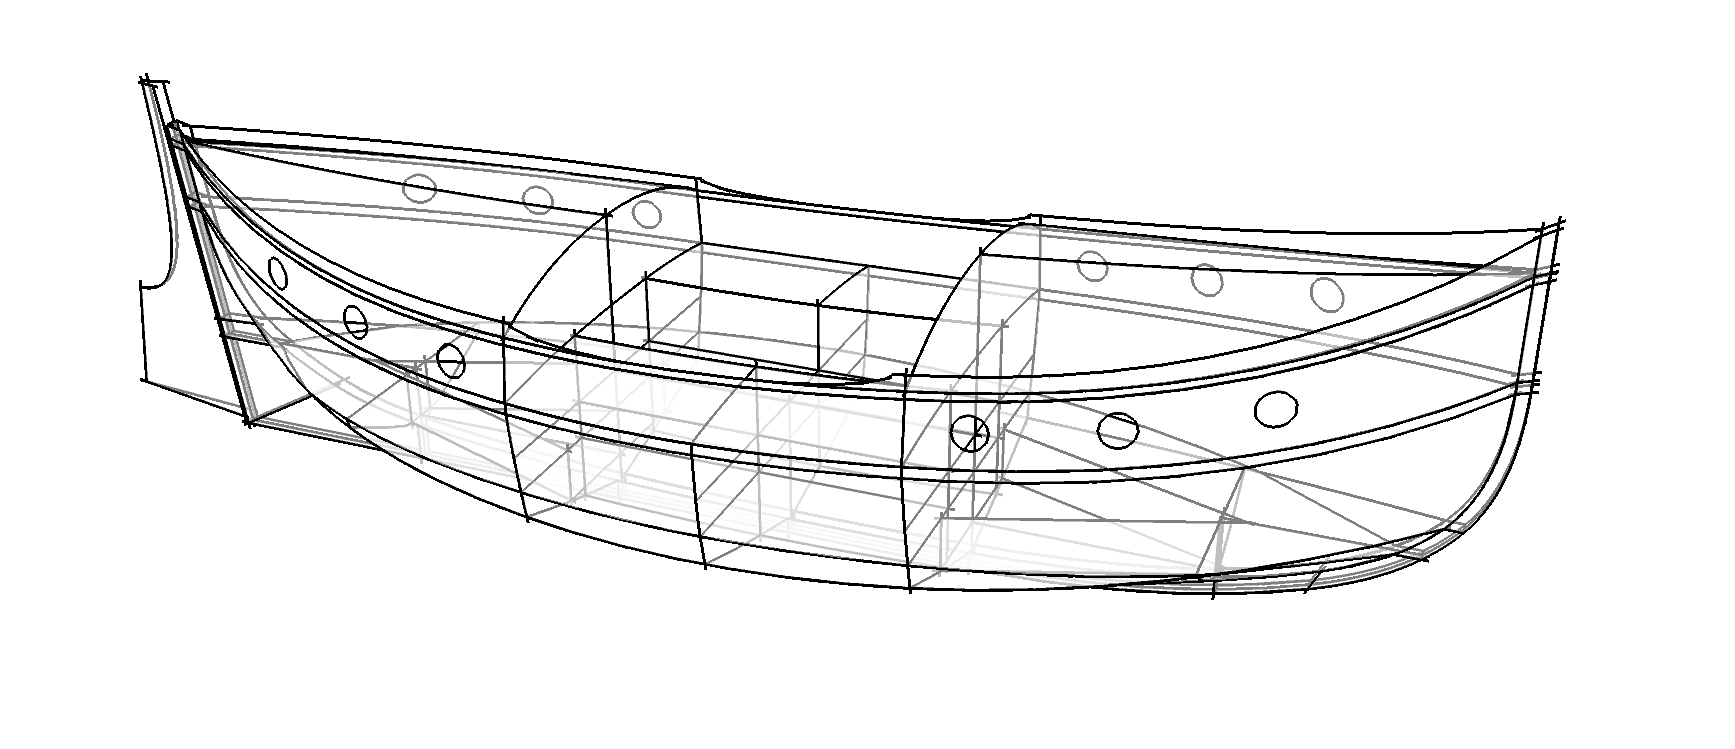 Whaleboat судно чертежи